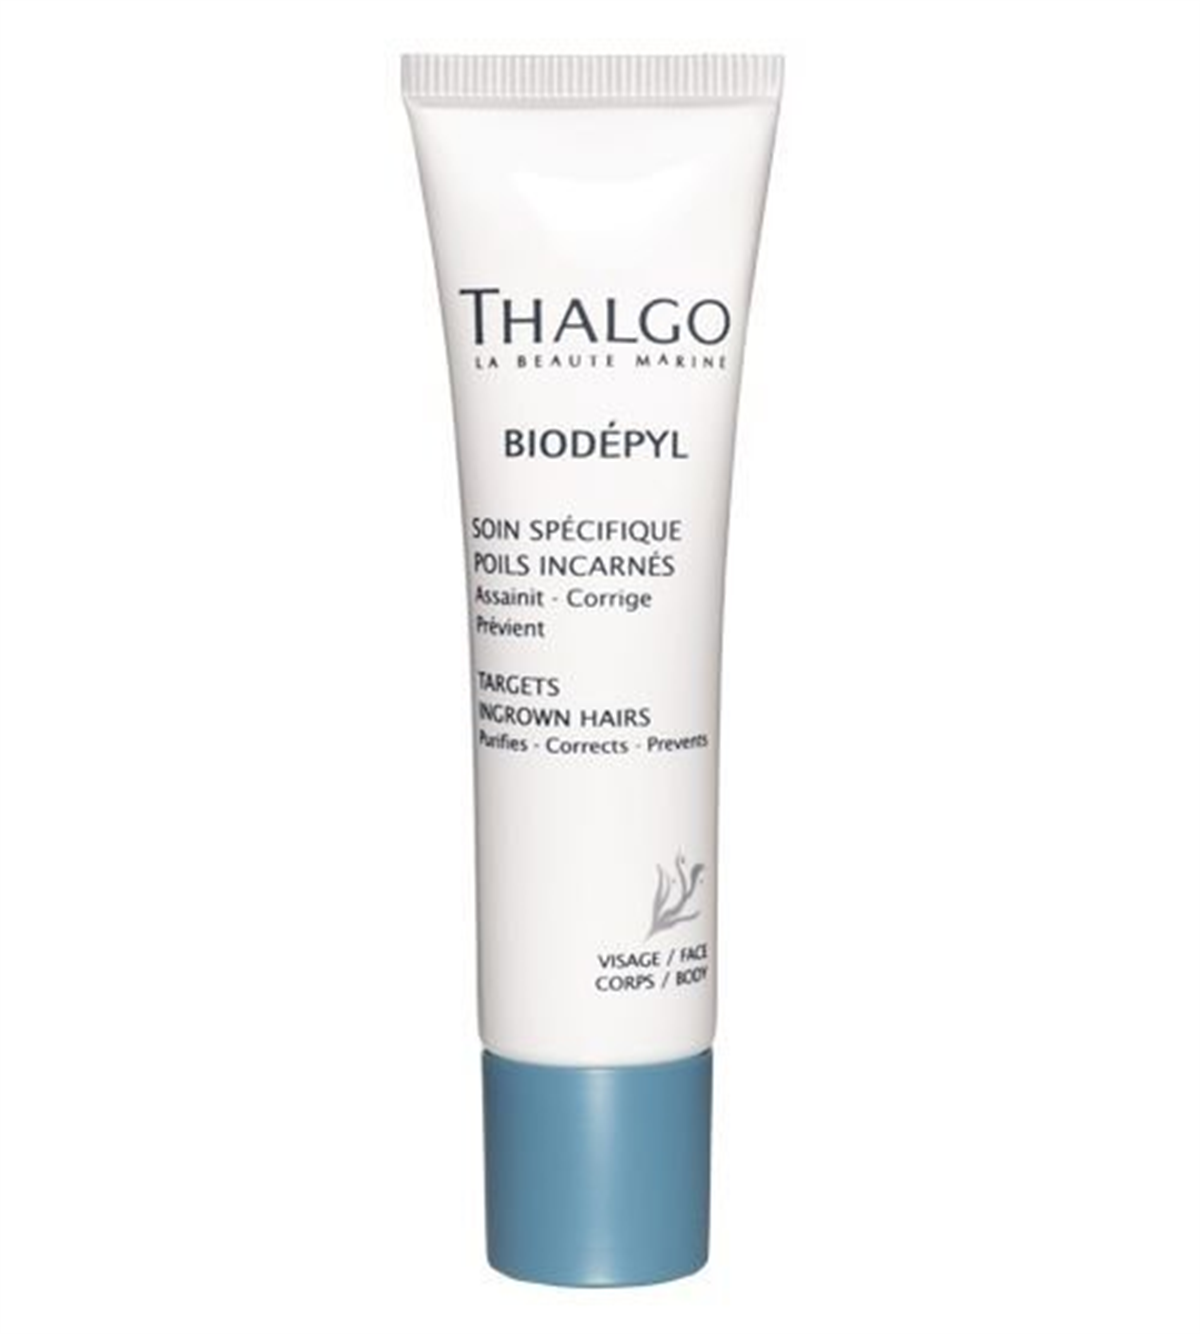 Thalgo Biodepyl Targets Ingrown Hairs - Kıl Dönmelerine Karşı Pürüzsüzleştirici ve Renk Düzenleyici Kremi 30 ML